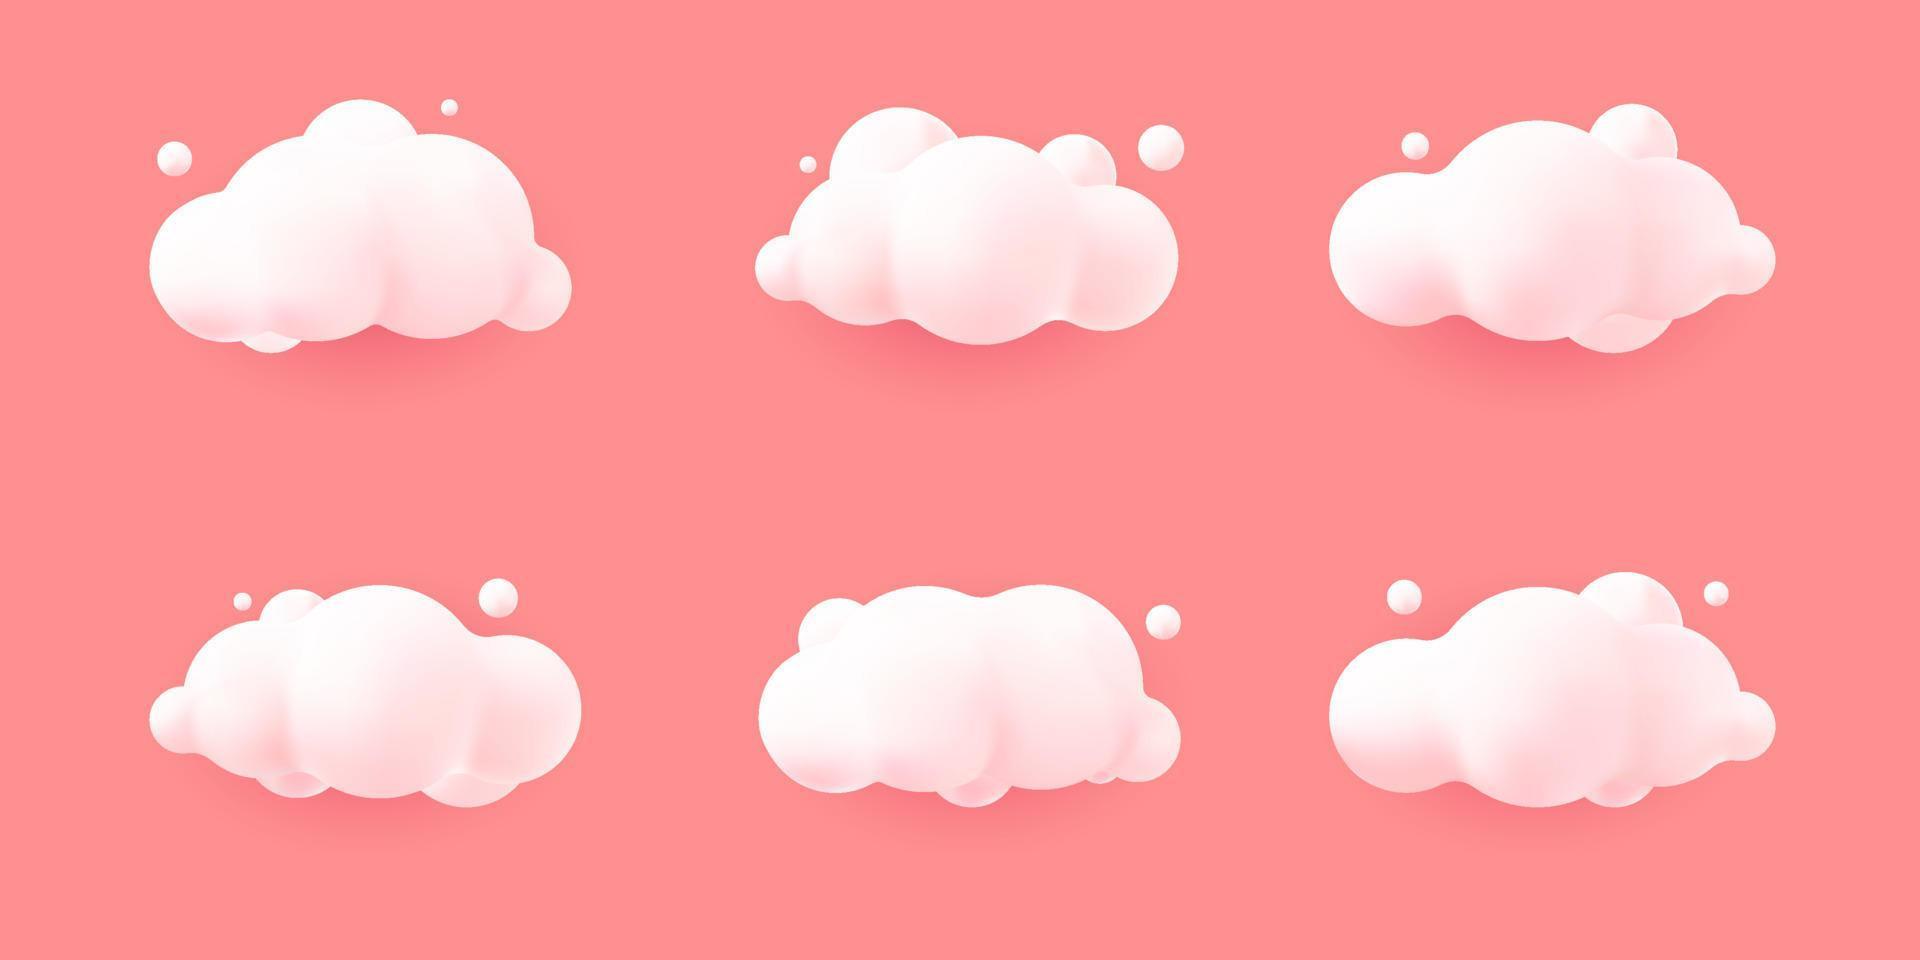 vita 3d realistiska moln som isoleras på en rosa pastell bakgrund. gör mjuk rund tecknad fluffiga moln ikon på himlen. 3D geometriska former vektorillustration vektor